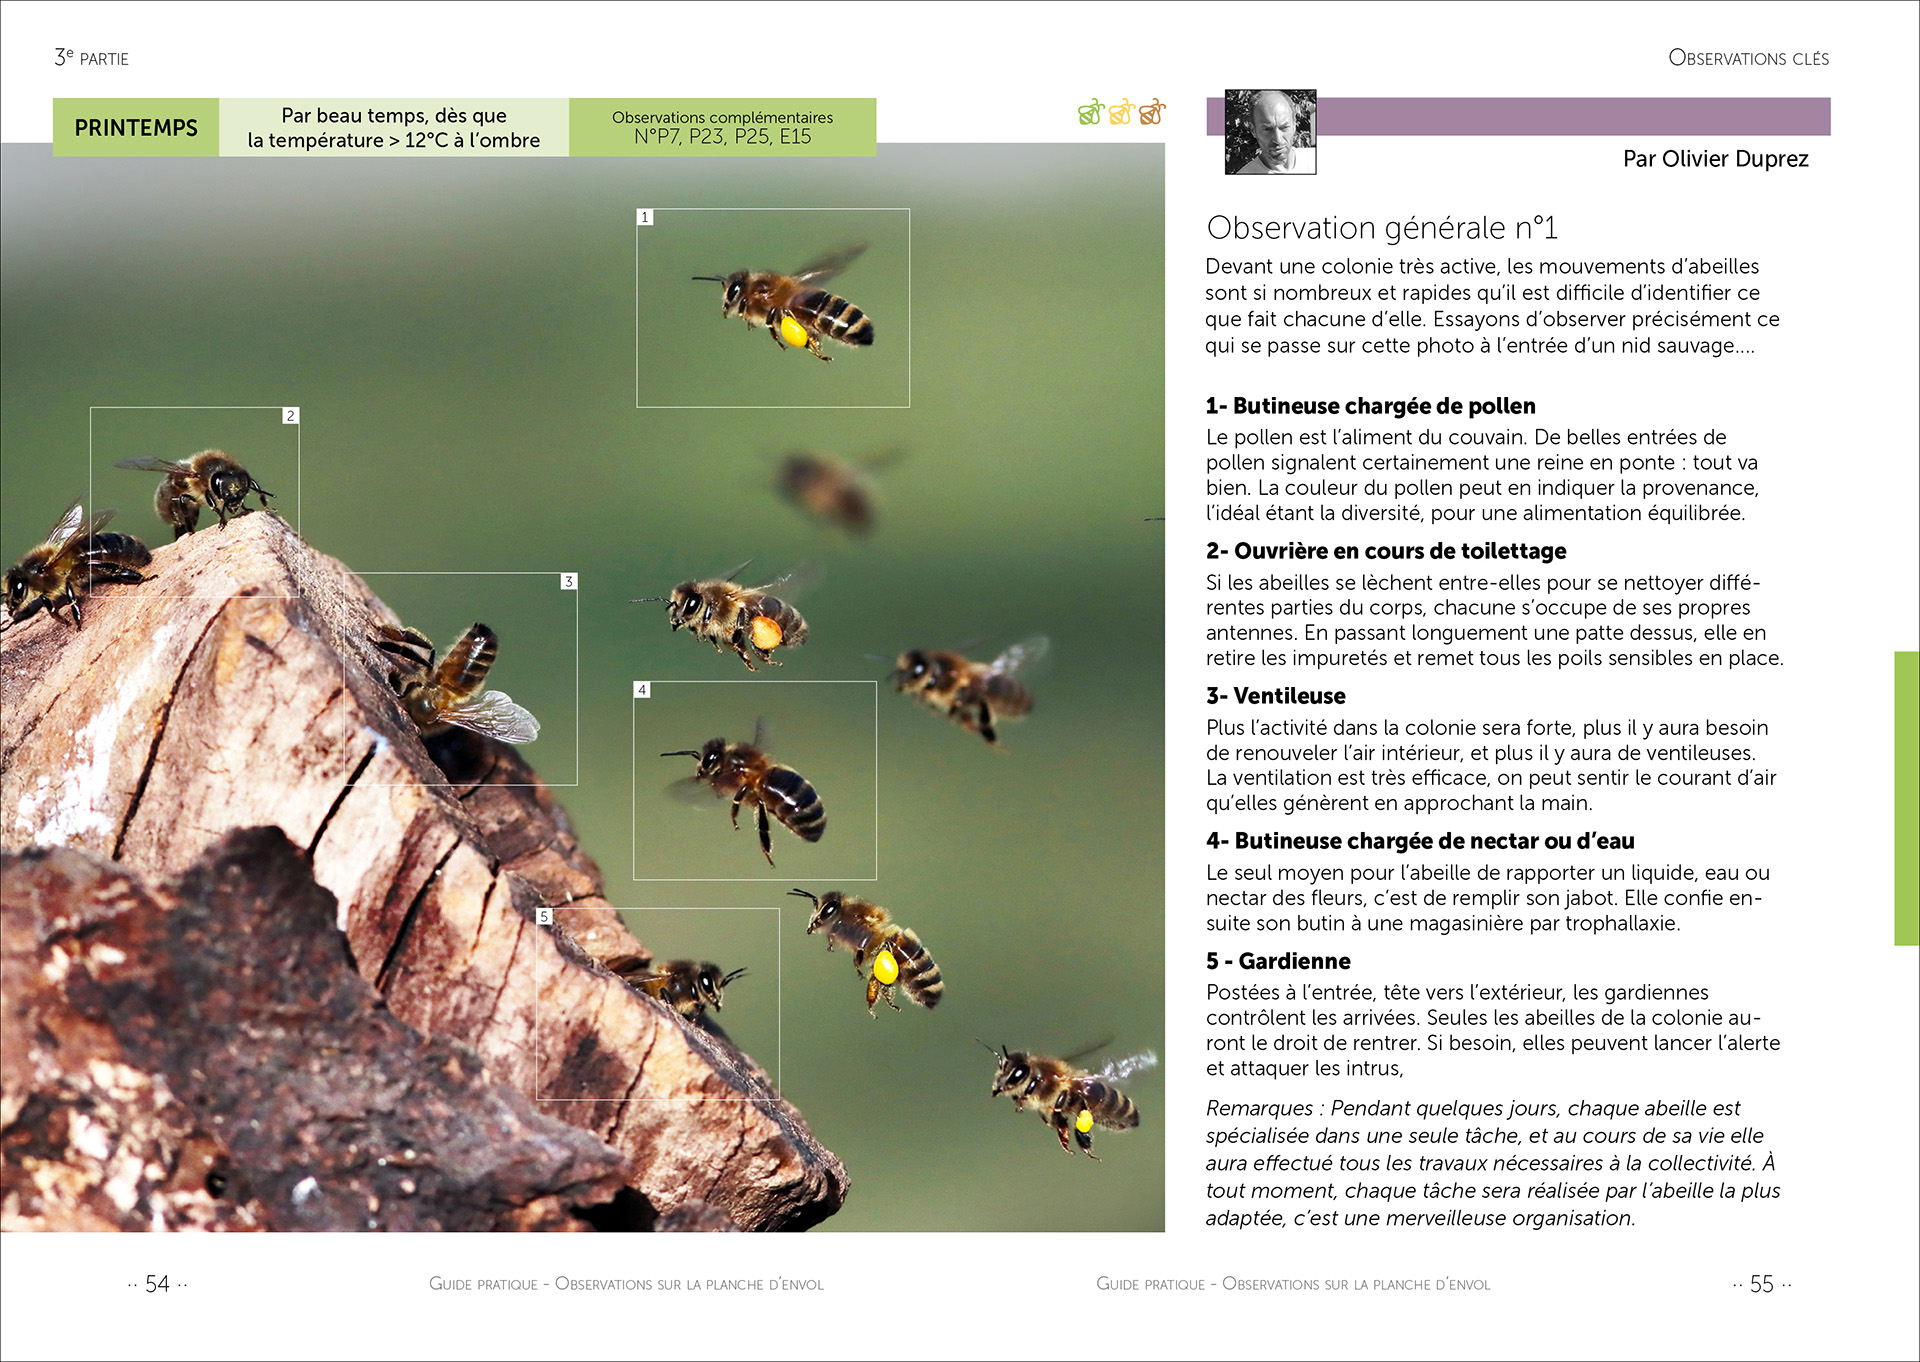 Observation n°1 : Devant une colonie très active, les mouvements d’abeilles sont si nombreux et rapides qu’il est difficile d’identifier ce que fait chacune d’elle. Essayons d’observer précisément ce qui se passe sur cette photo à l’entrée d’un nid sauvage... Photo ©Jean-Marie Durand